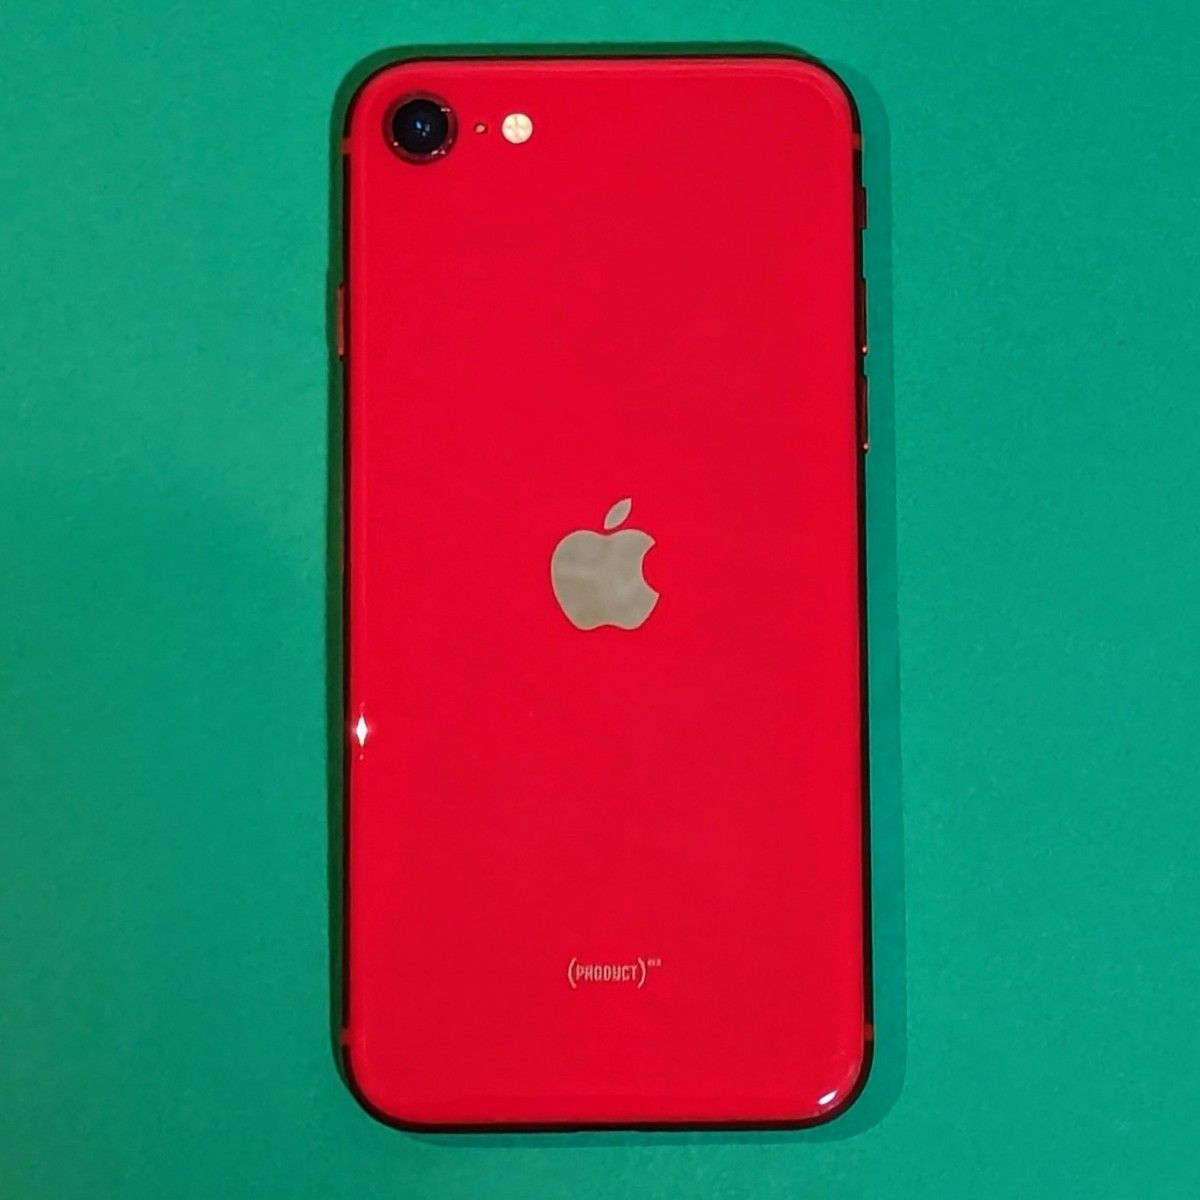 【バッテリー交換済】iPhone SE 第2世代 128GB レッド (PRODUCT)RED SIMフリー ガラスフィルム装着済